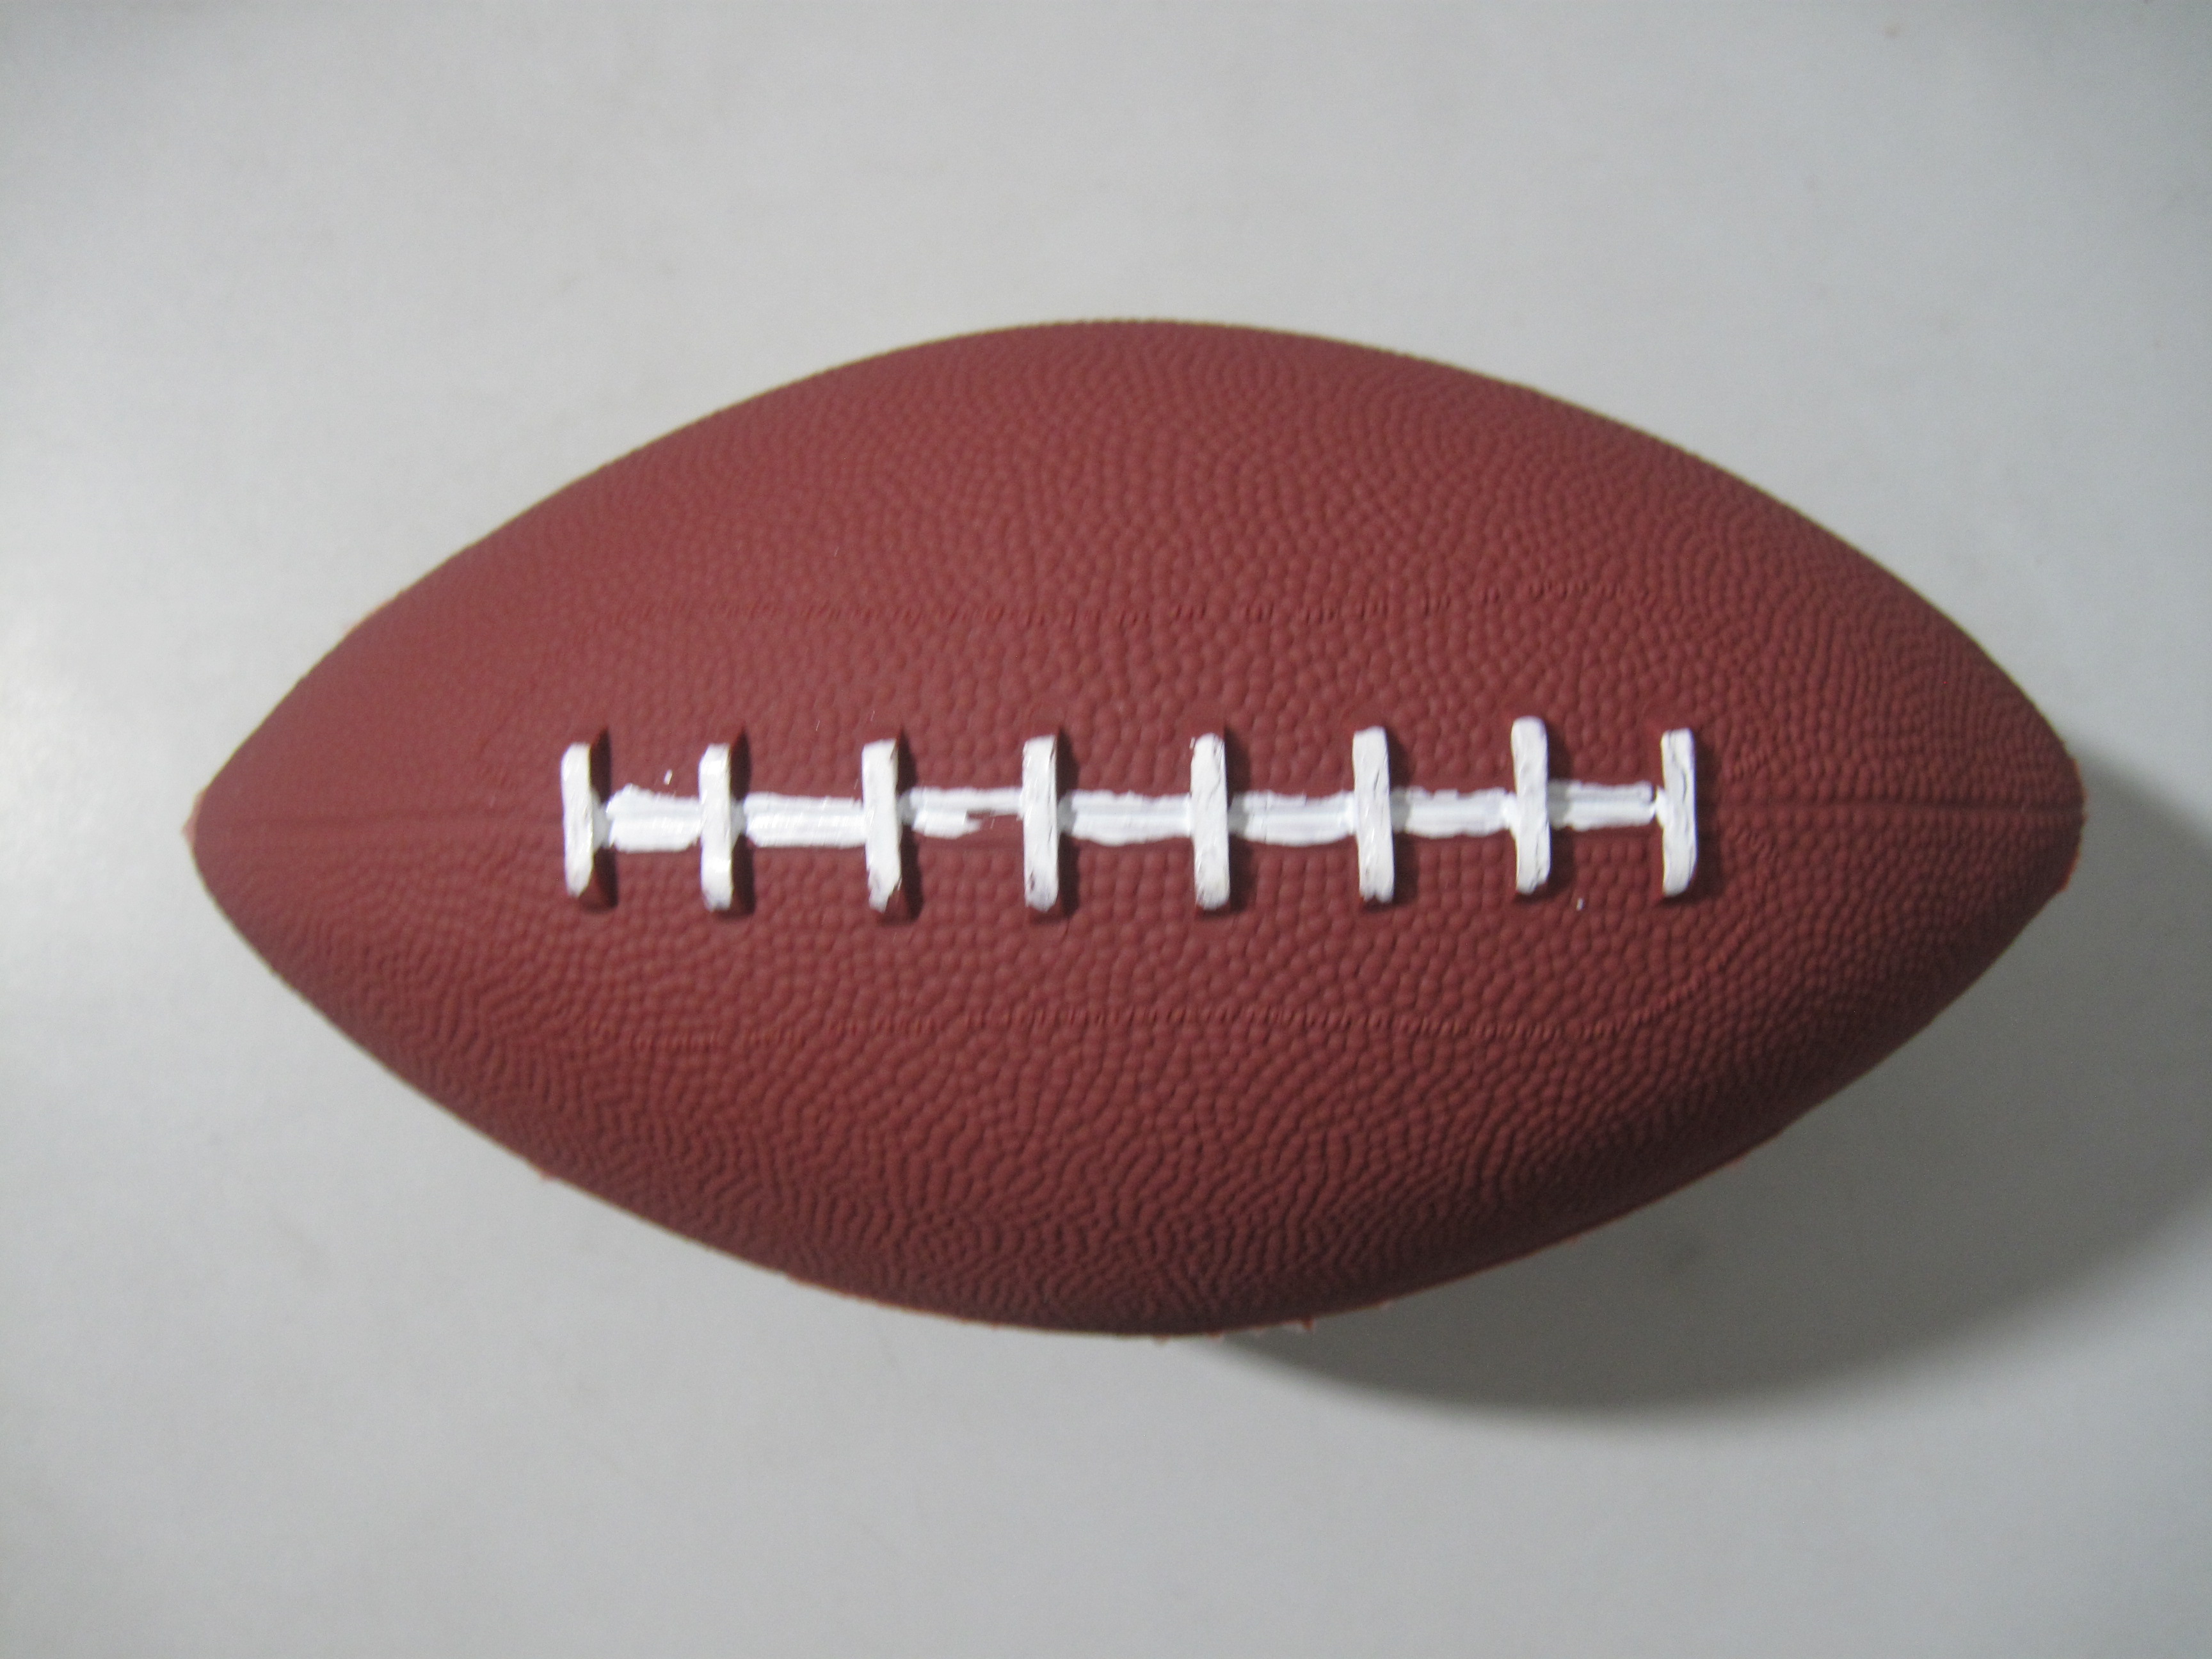 Amerikaanse voetbal / Rugbybal – Buite- en binneshuise sportballe